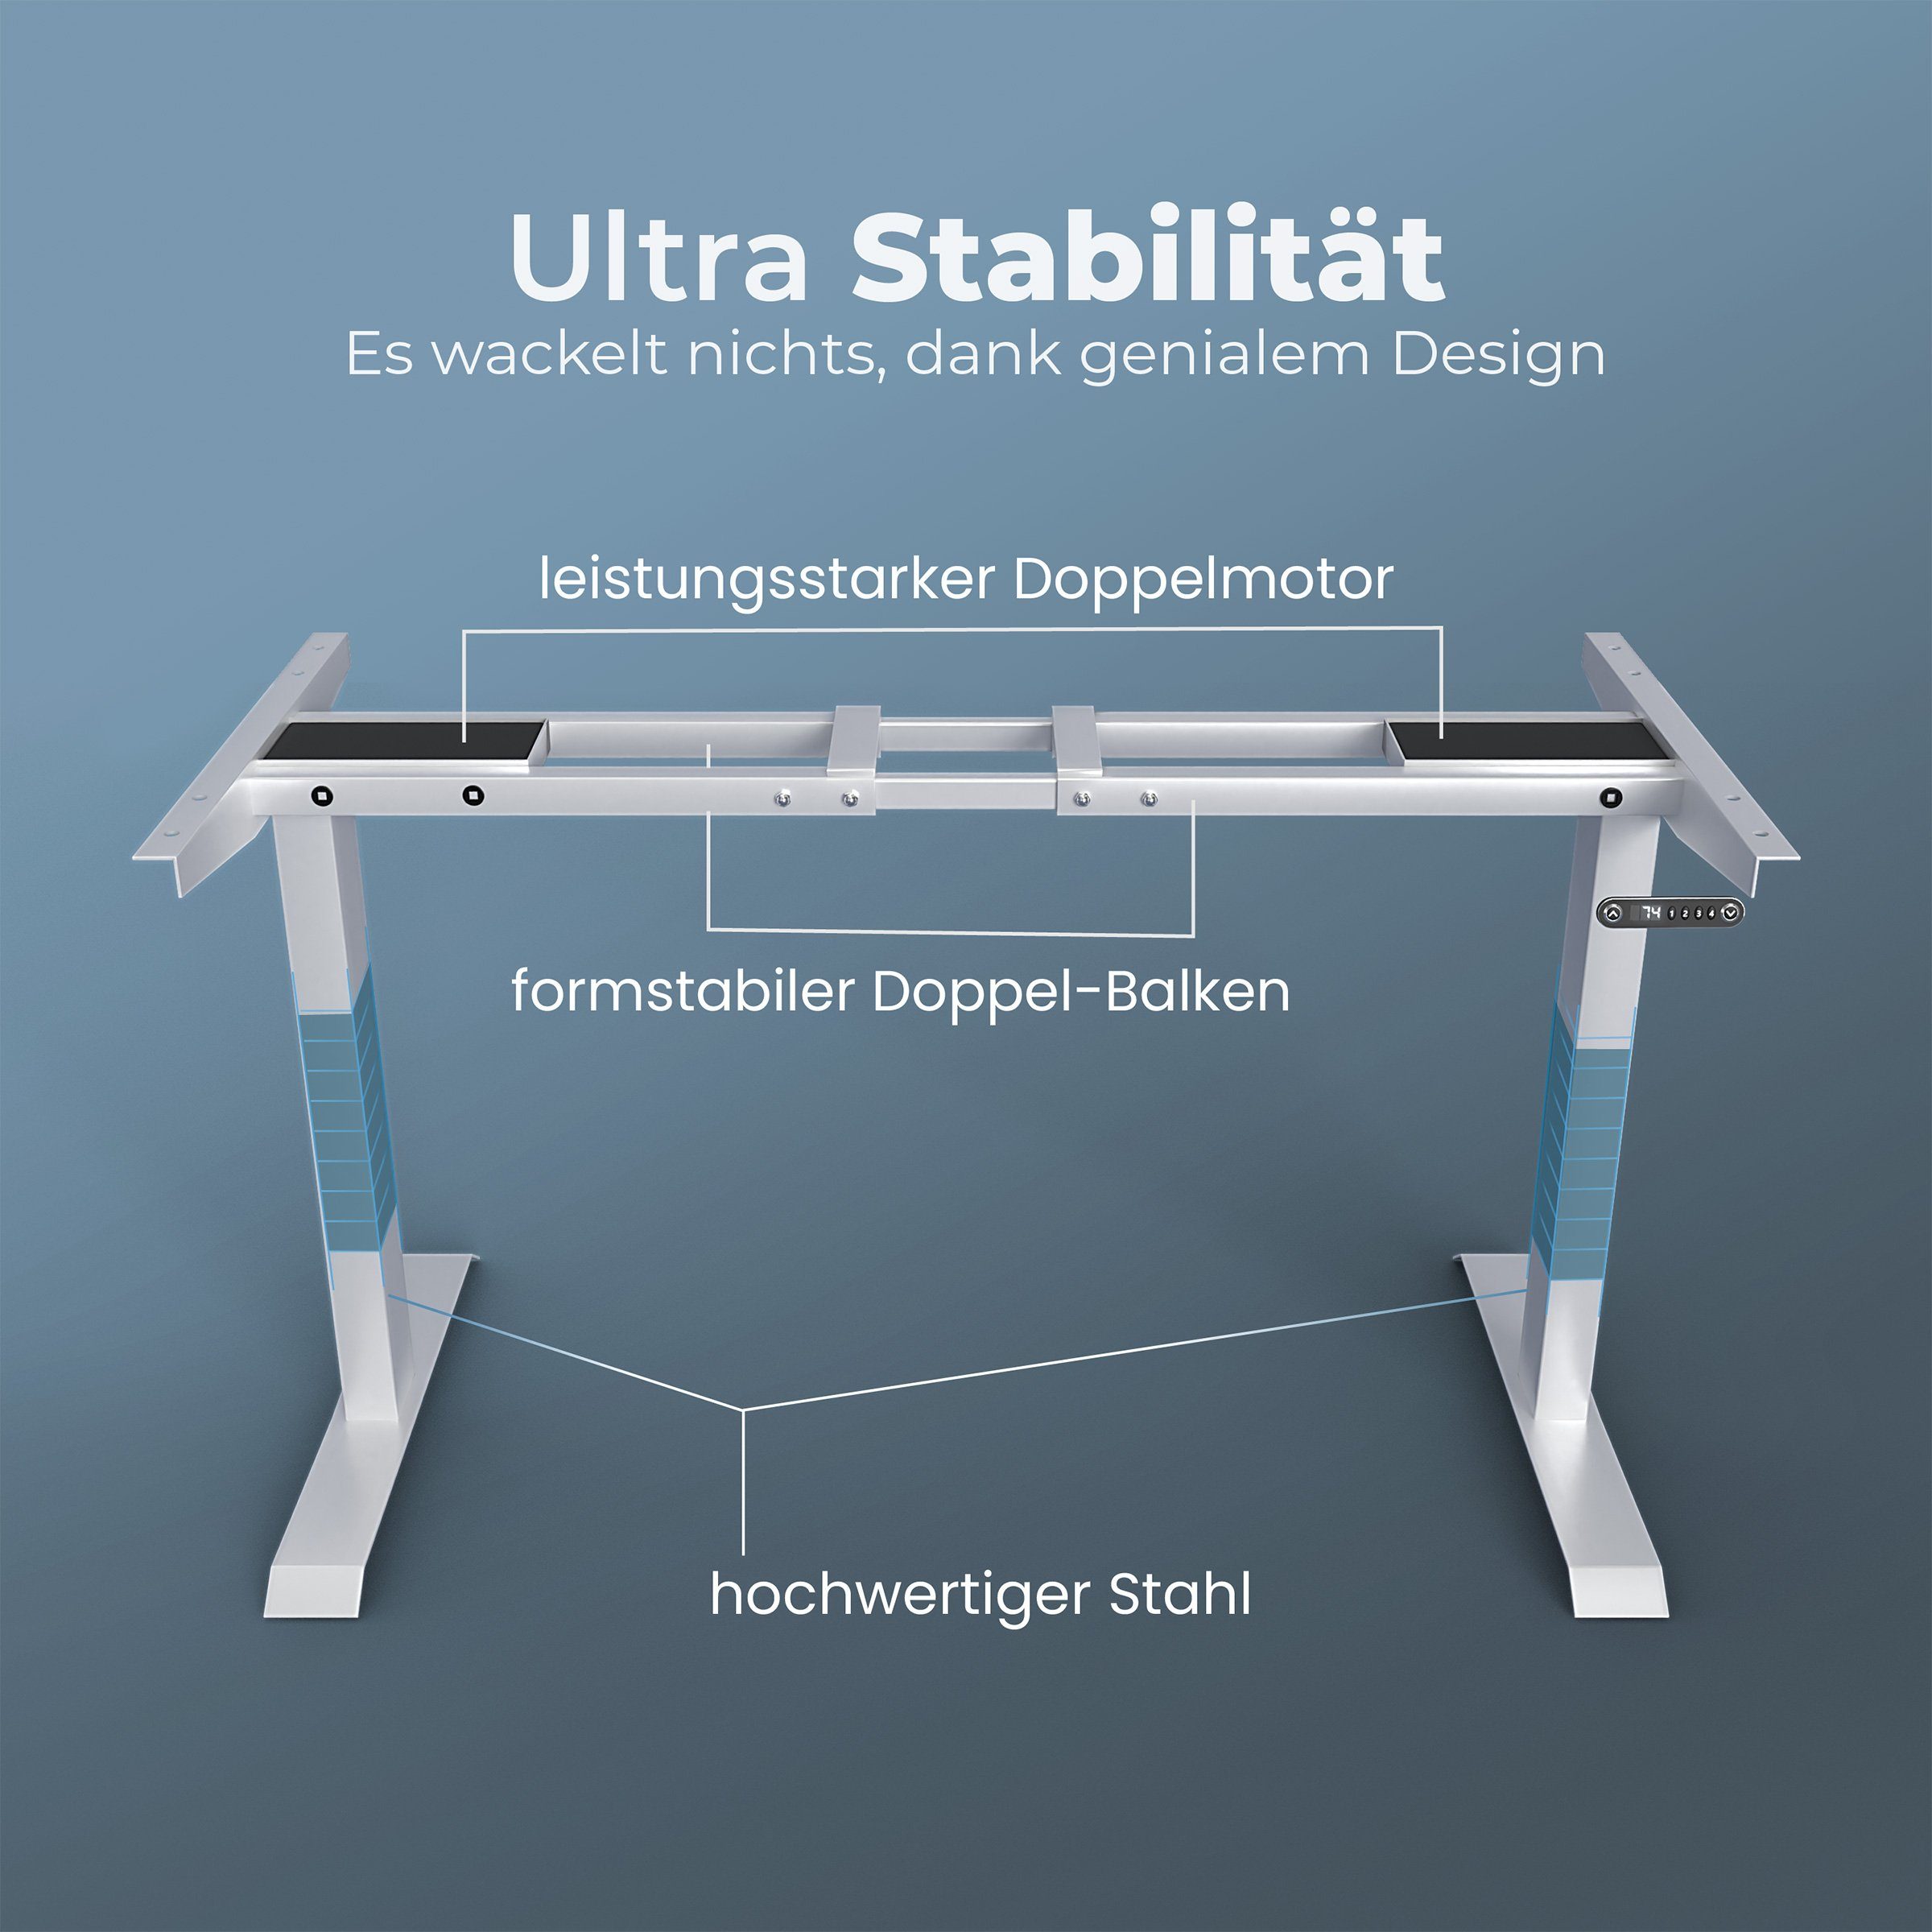 Tischgestell mit Rahmen Holz-Optik Höhenverstellbar Gestell Schreibtisch Bürotisch VESKA Elektrisch Dual Motor Memoryfunktion mit -